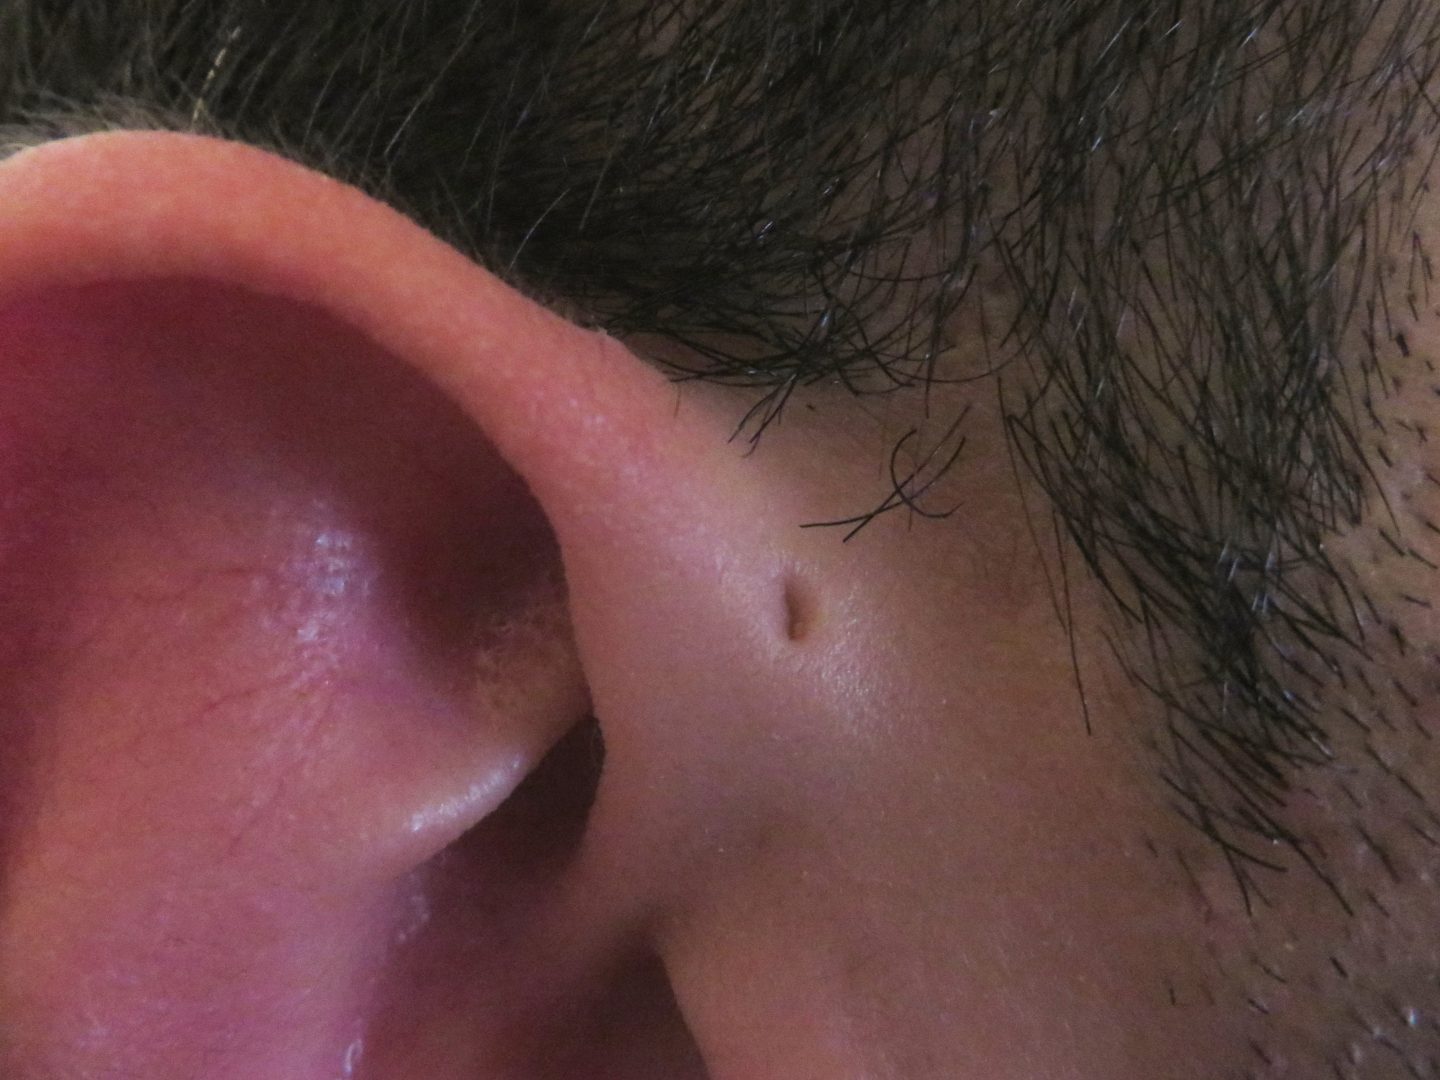 ما أسباب وجود الوهدة أو الثقب أمام الأذن؟ وهل من مخاطر؟